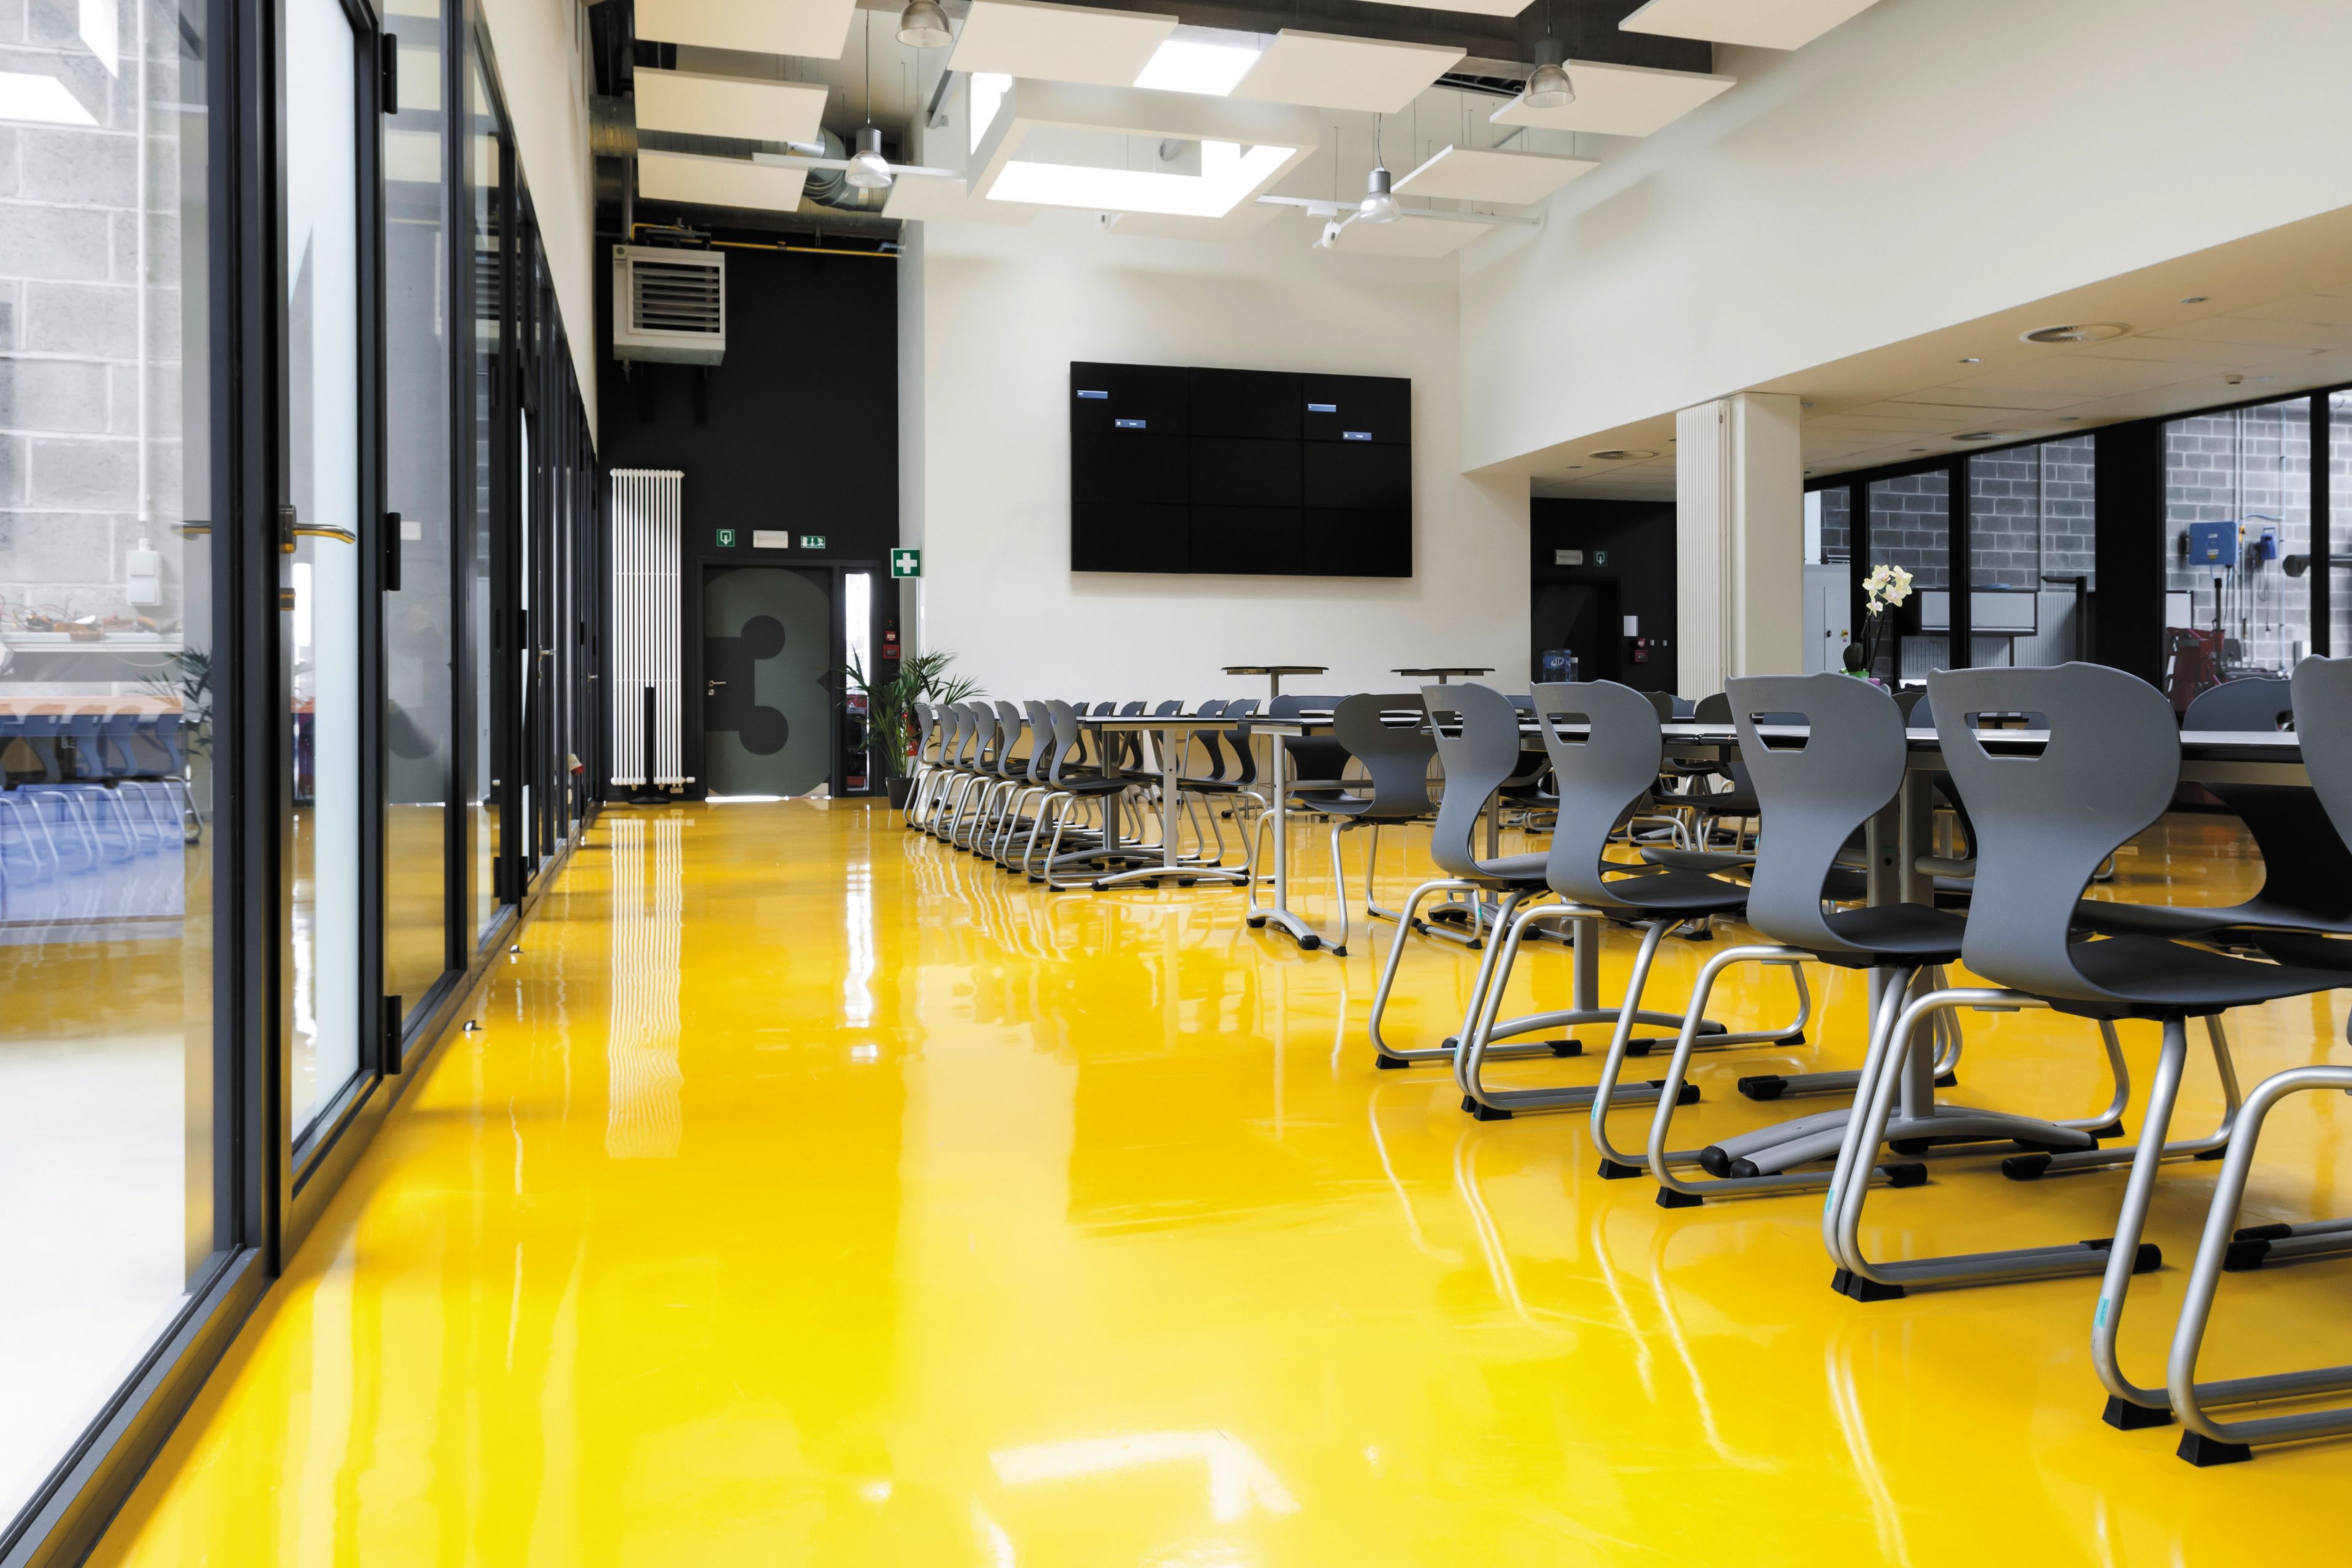 Sika ComfortFloor® yellow floor at school cafeteria